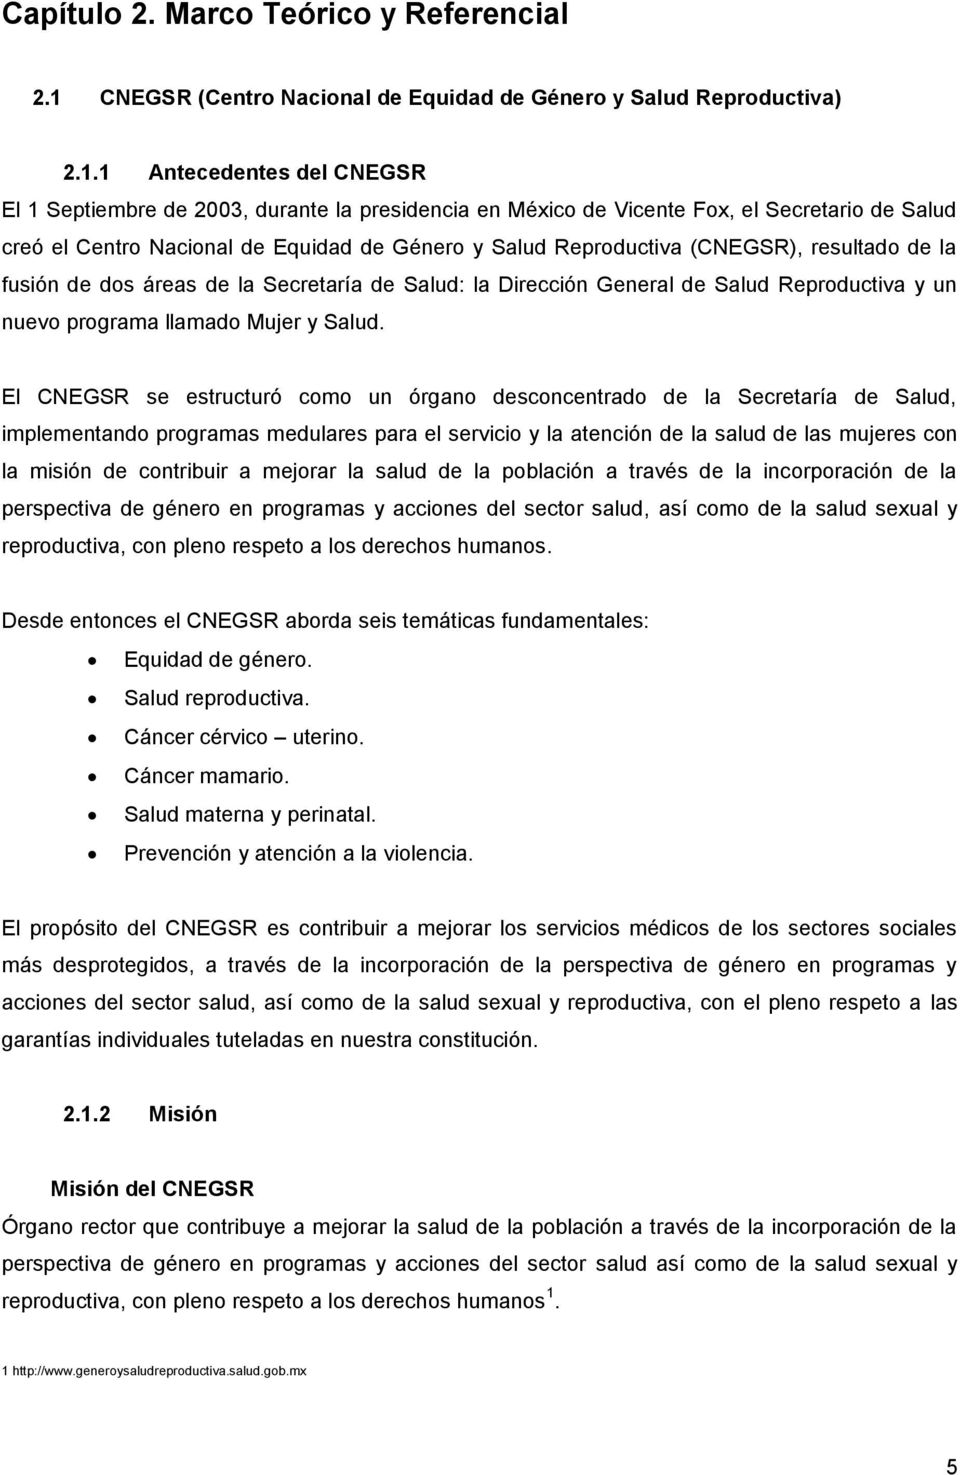 1 Antecedentes del CNEGSR El 1 Septiembre de 2003, durante la presidencia en México de Vicente Fox, el Secretario de Salud creó el Centro Nacional de Equidad de Género y Salud Reproductiva (CNEGSR),